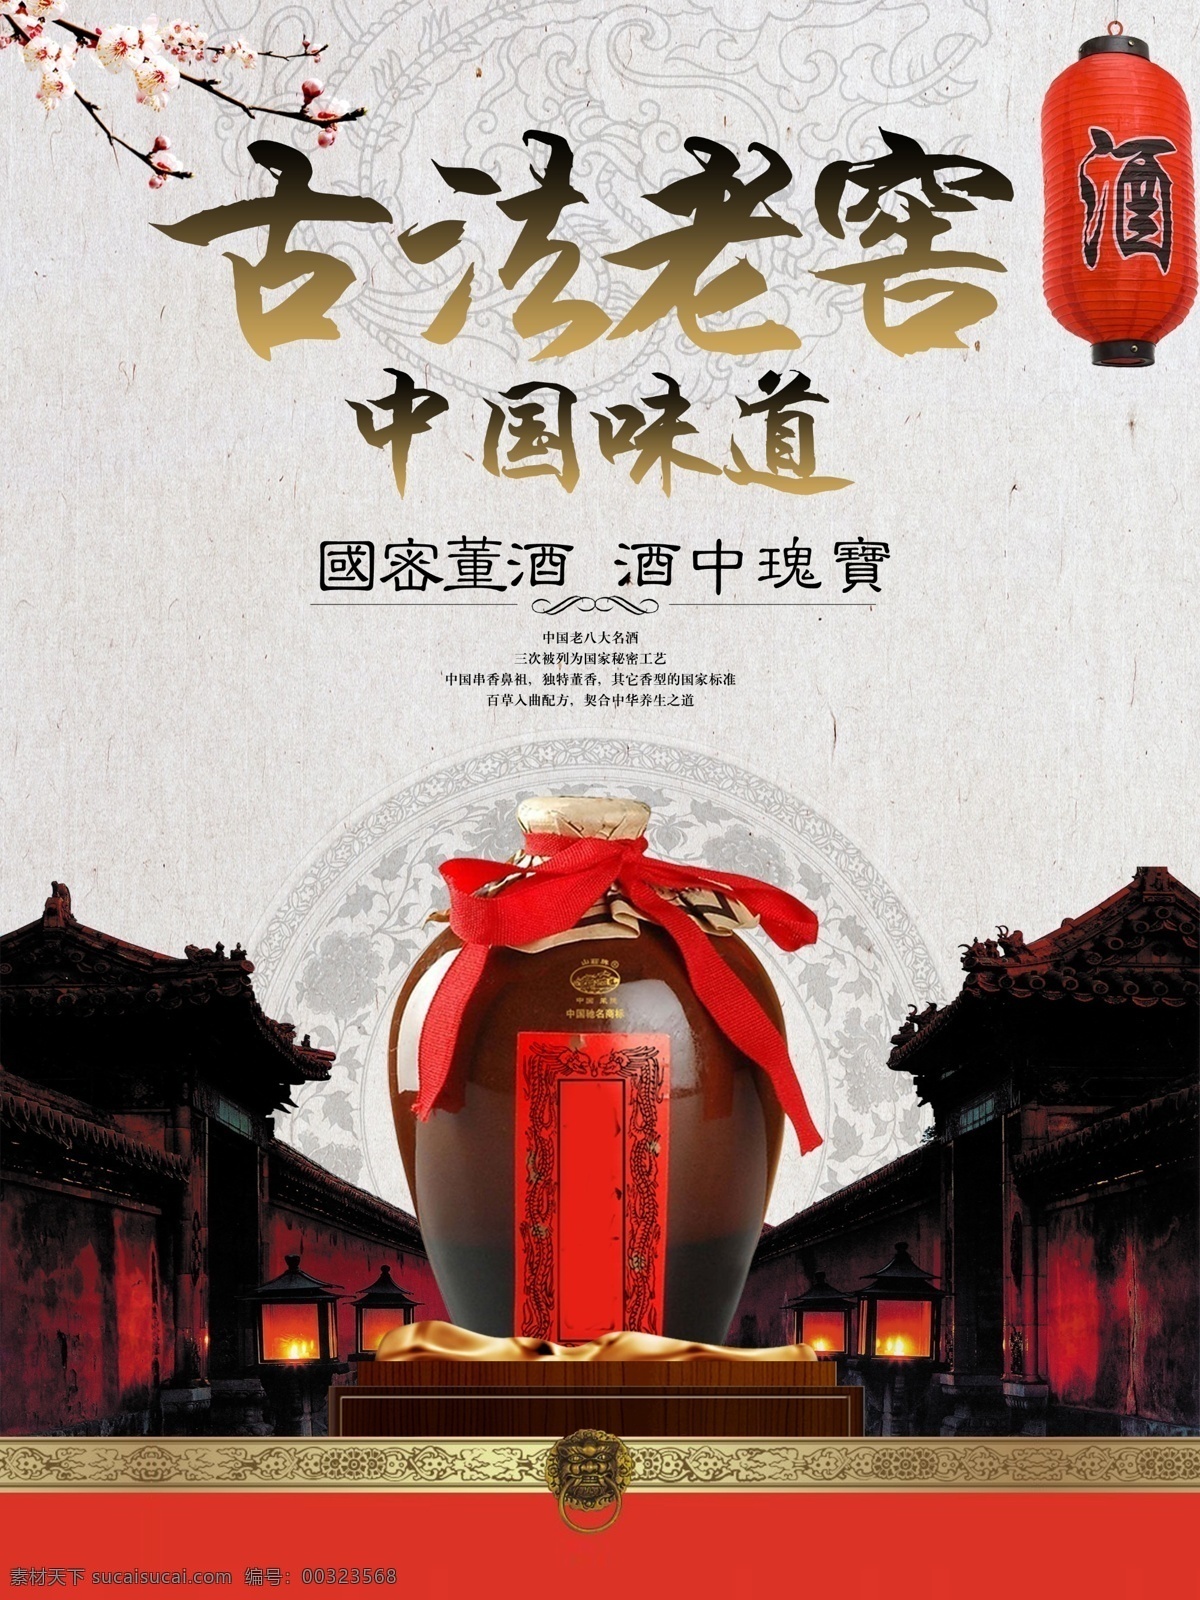 古法 老窖 白酒 宣传 水墨 风格 海报 古法老窖 酿酒 中国风 展板 酒类